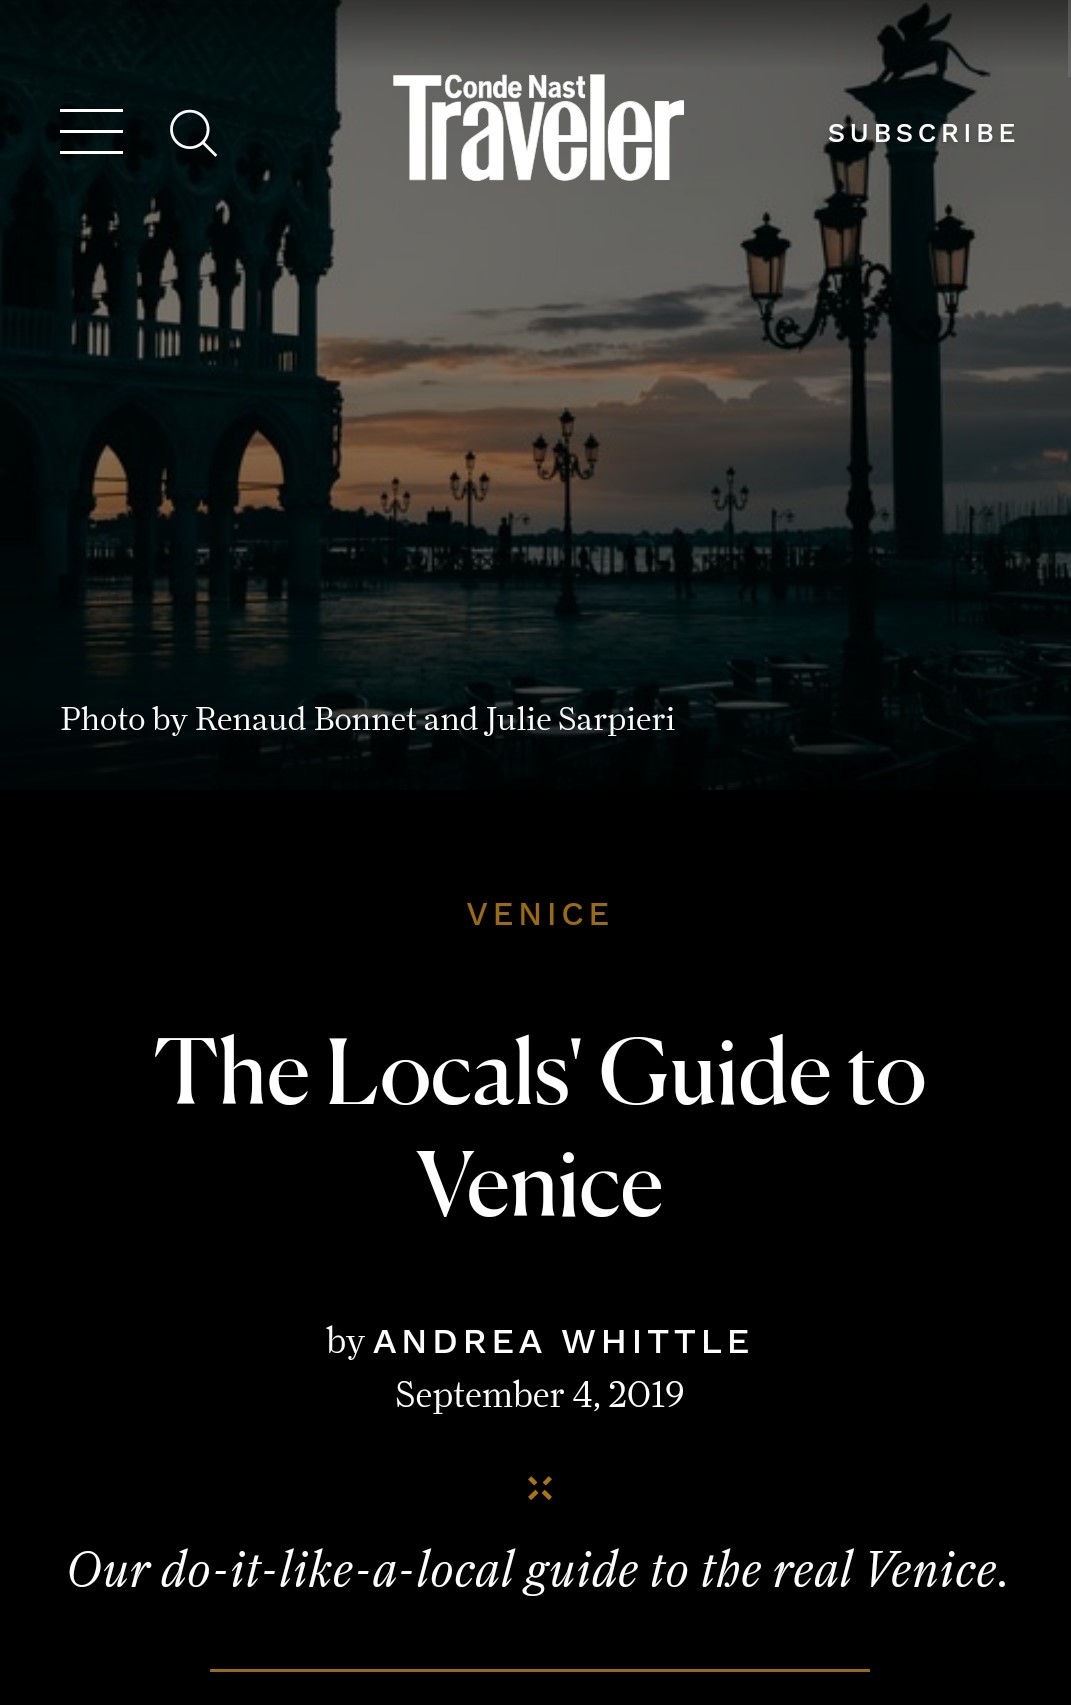 Condé Nast Traveler: The Local’s Guide to Venice